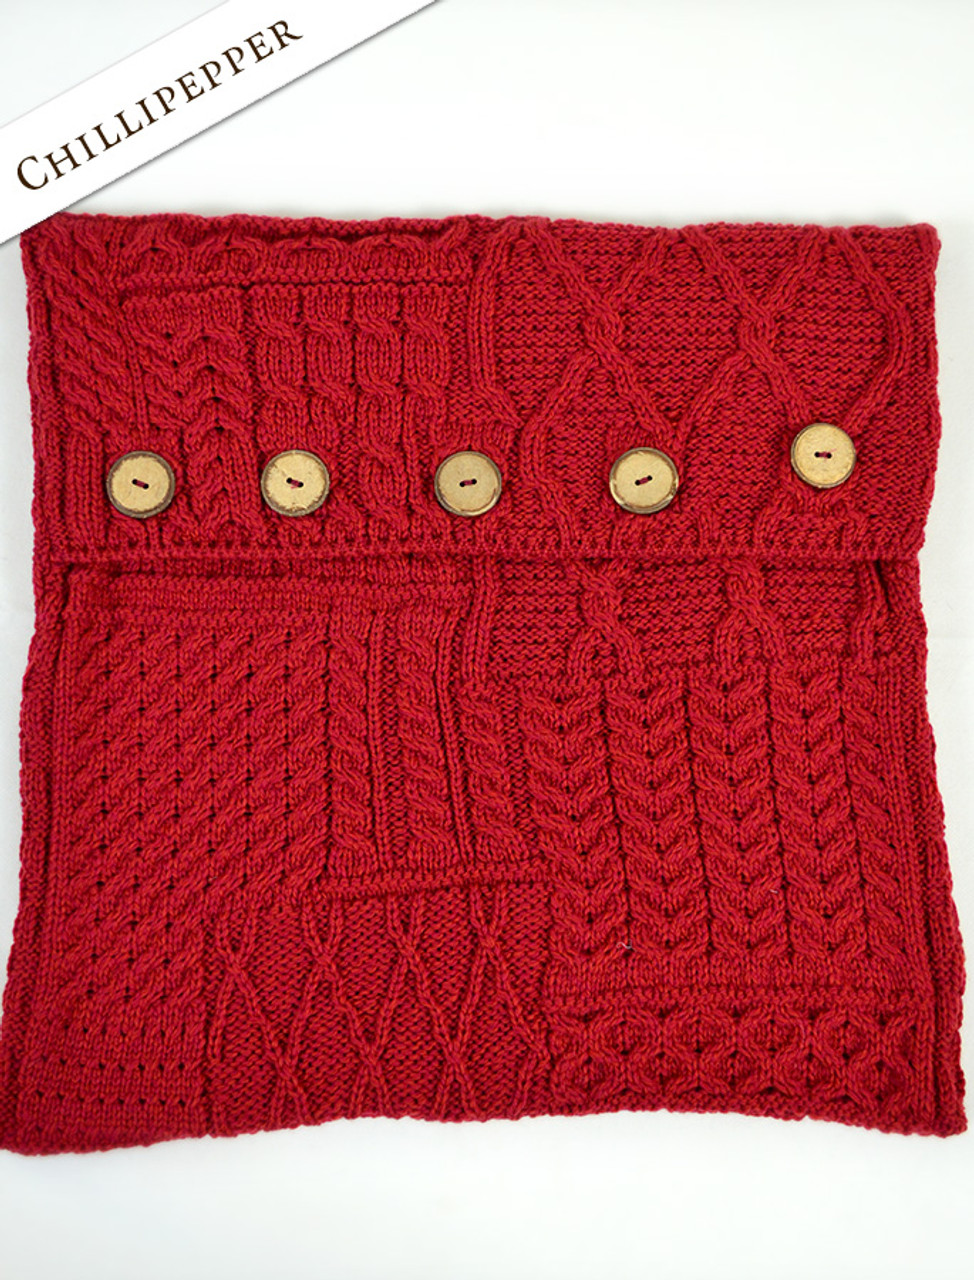 Aran-Knit Cushion Cover